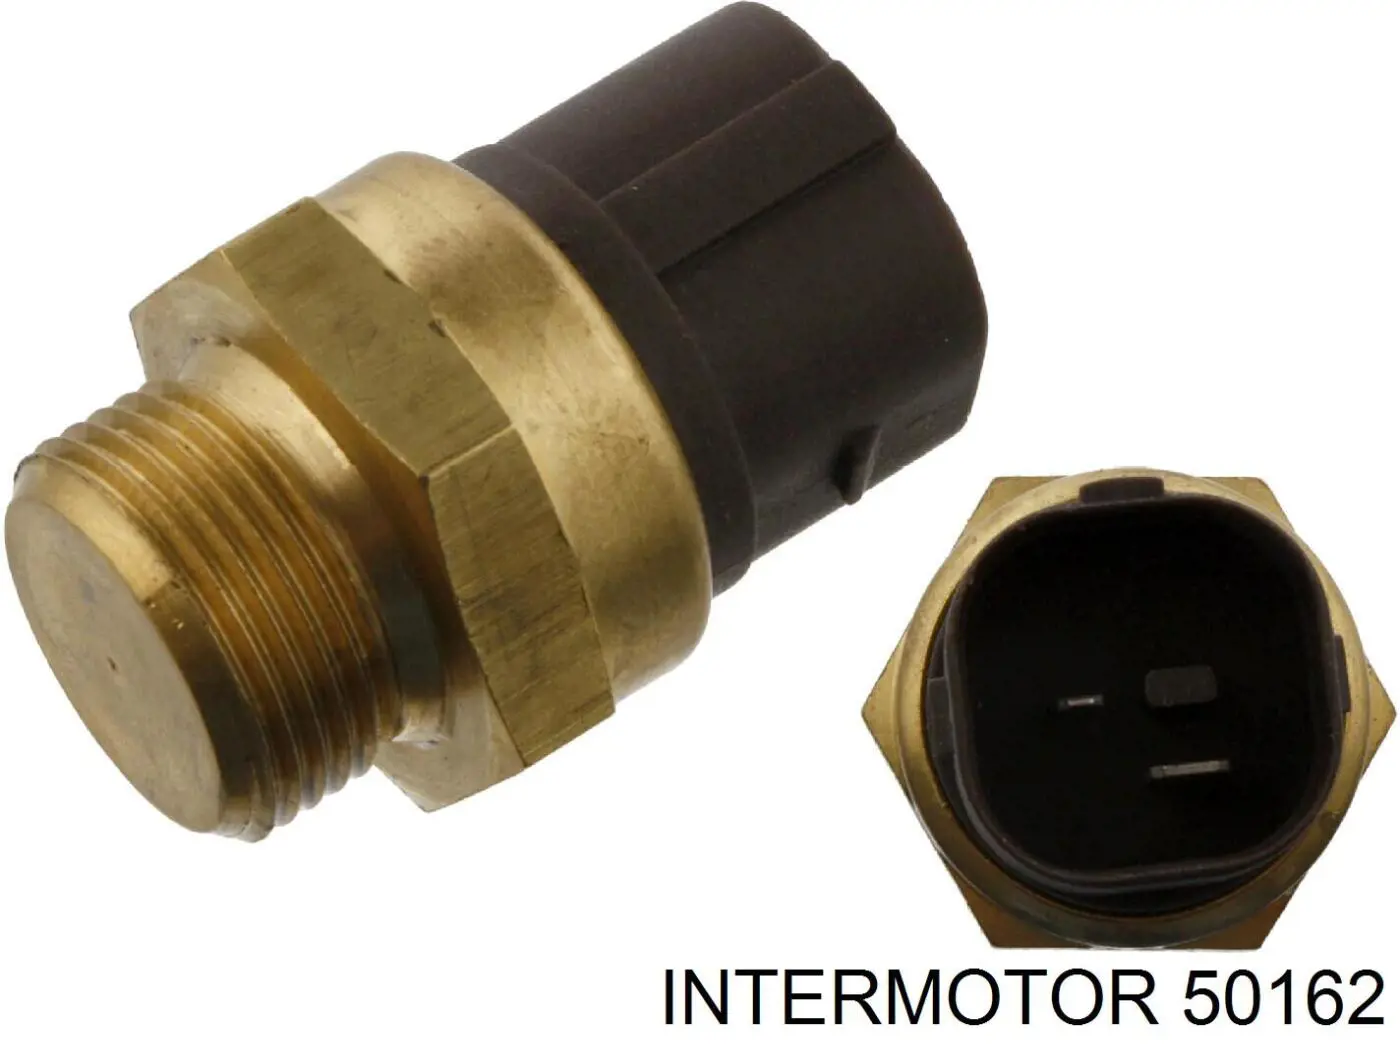 50162 Intermotor датчик температуры охлаждающей жидкости (включения вентилятора радиатора)